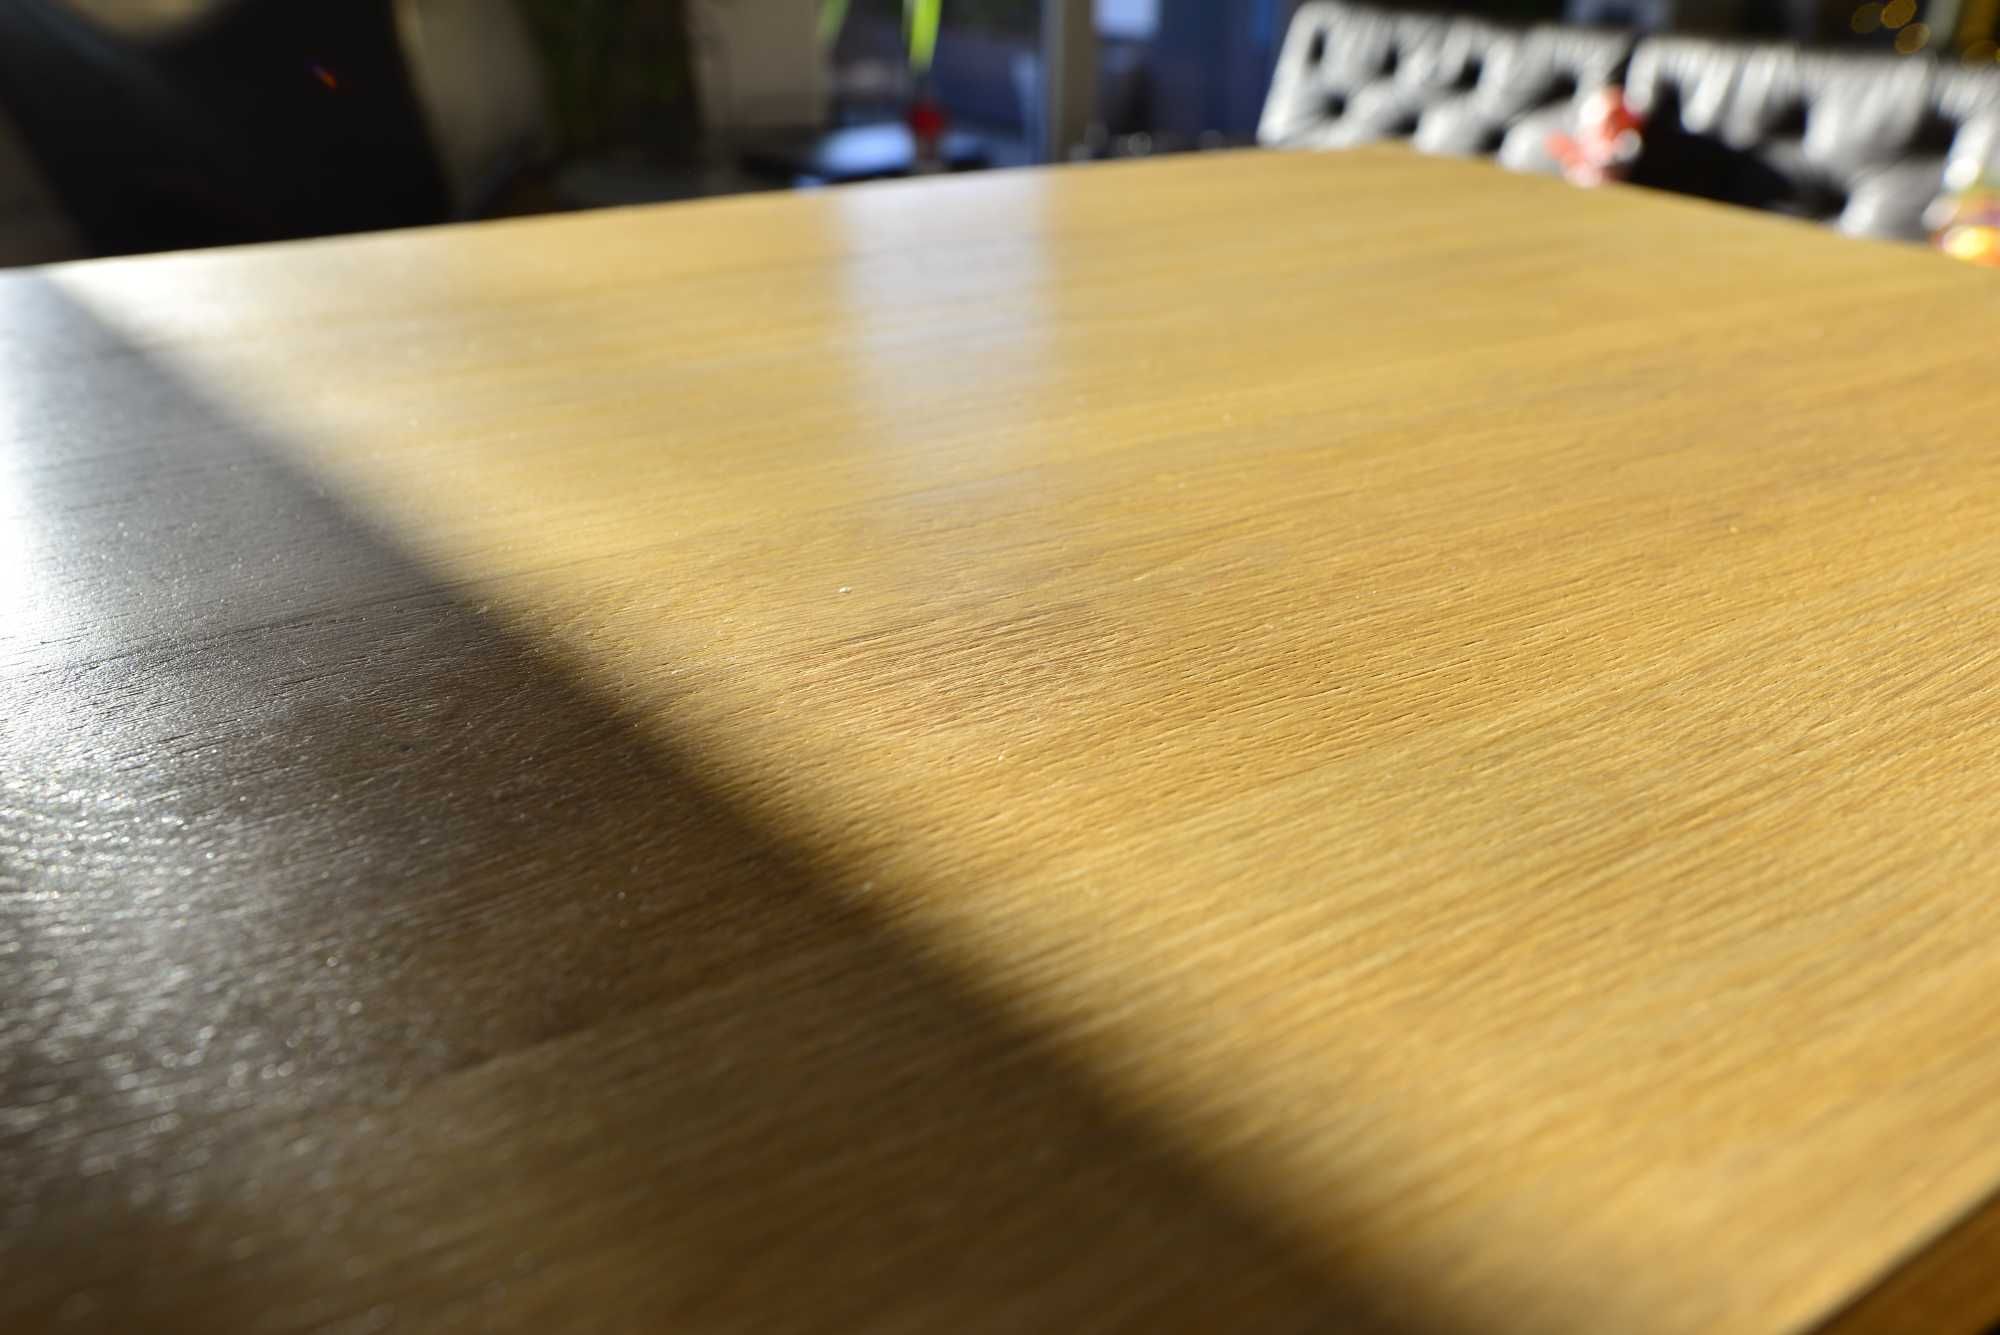 DĄB duży rozkładany stół lite drewno 54/100x180x80 cm krzesła GRATIS